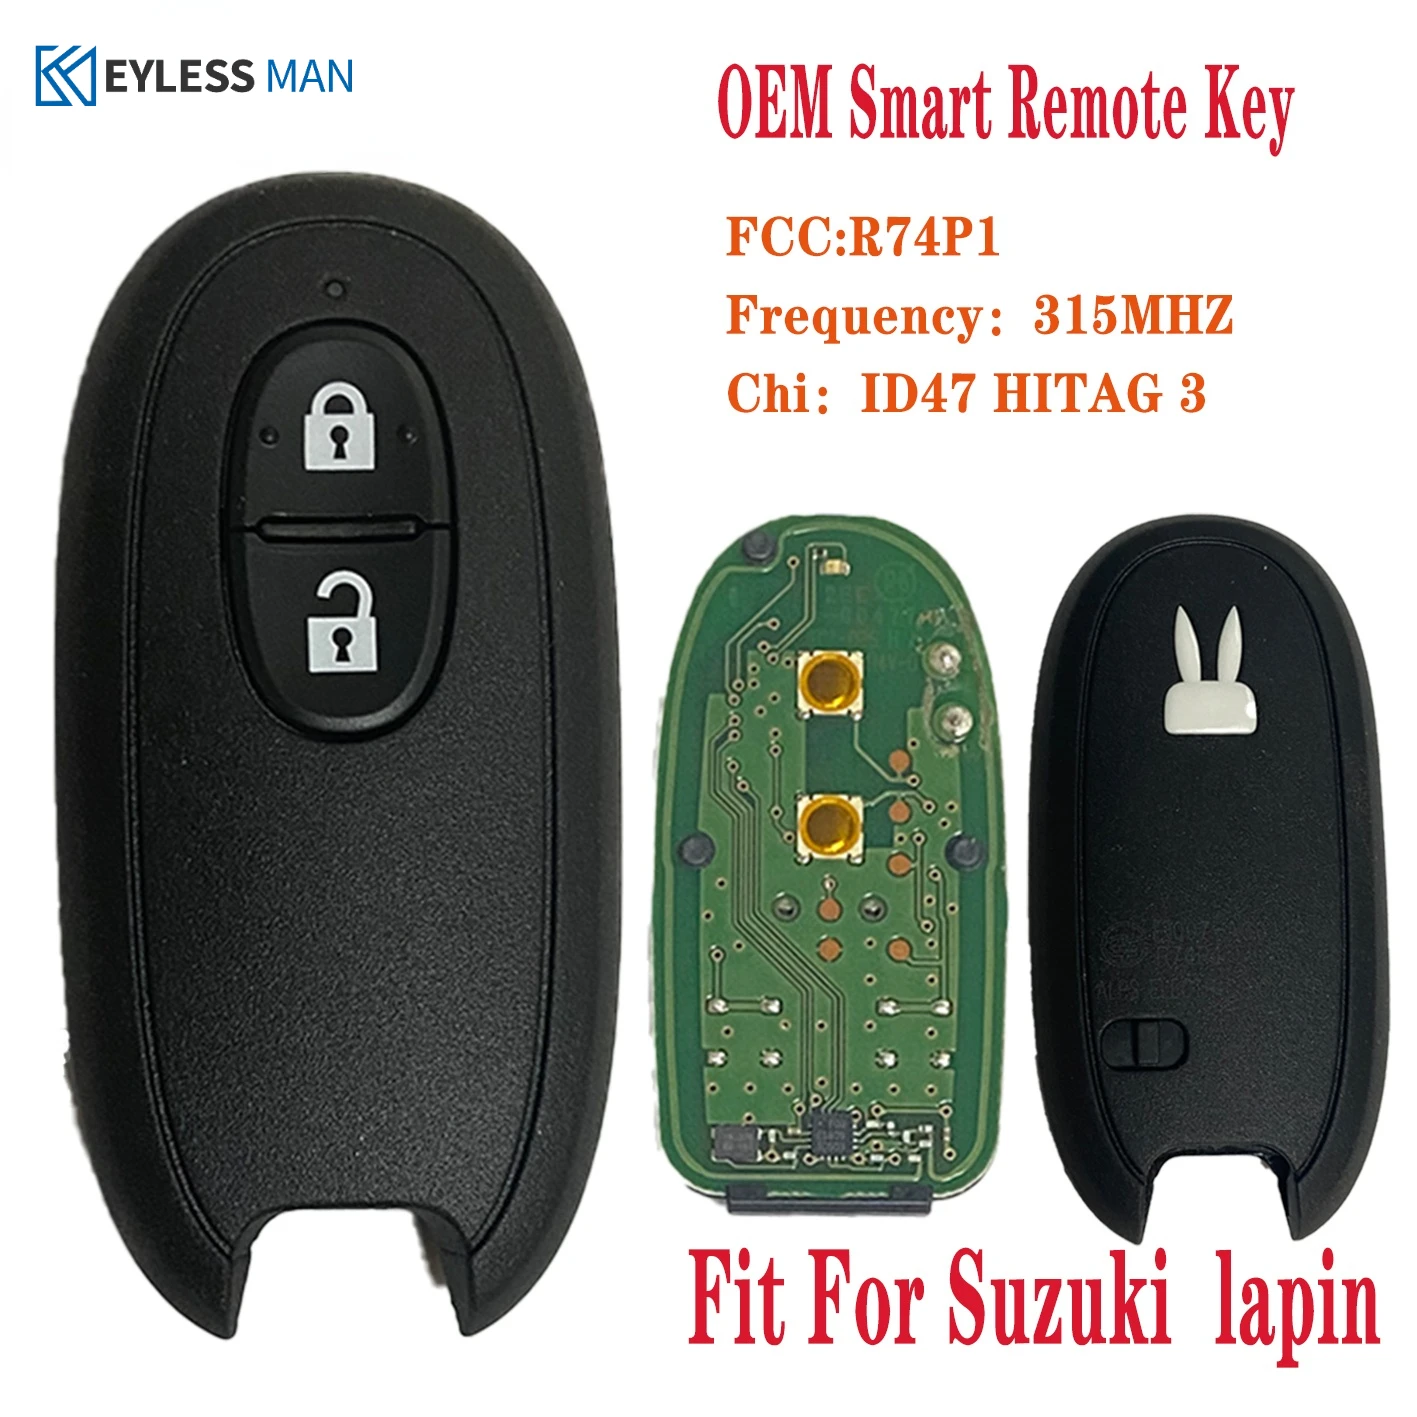 R74P1 Original Remote Car Key Fob For Suzuki e alto hasla 1 - Lapin Wagon r Genuine 315MHz FSK PCF7953X/HITAG 3/47 CHIP